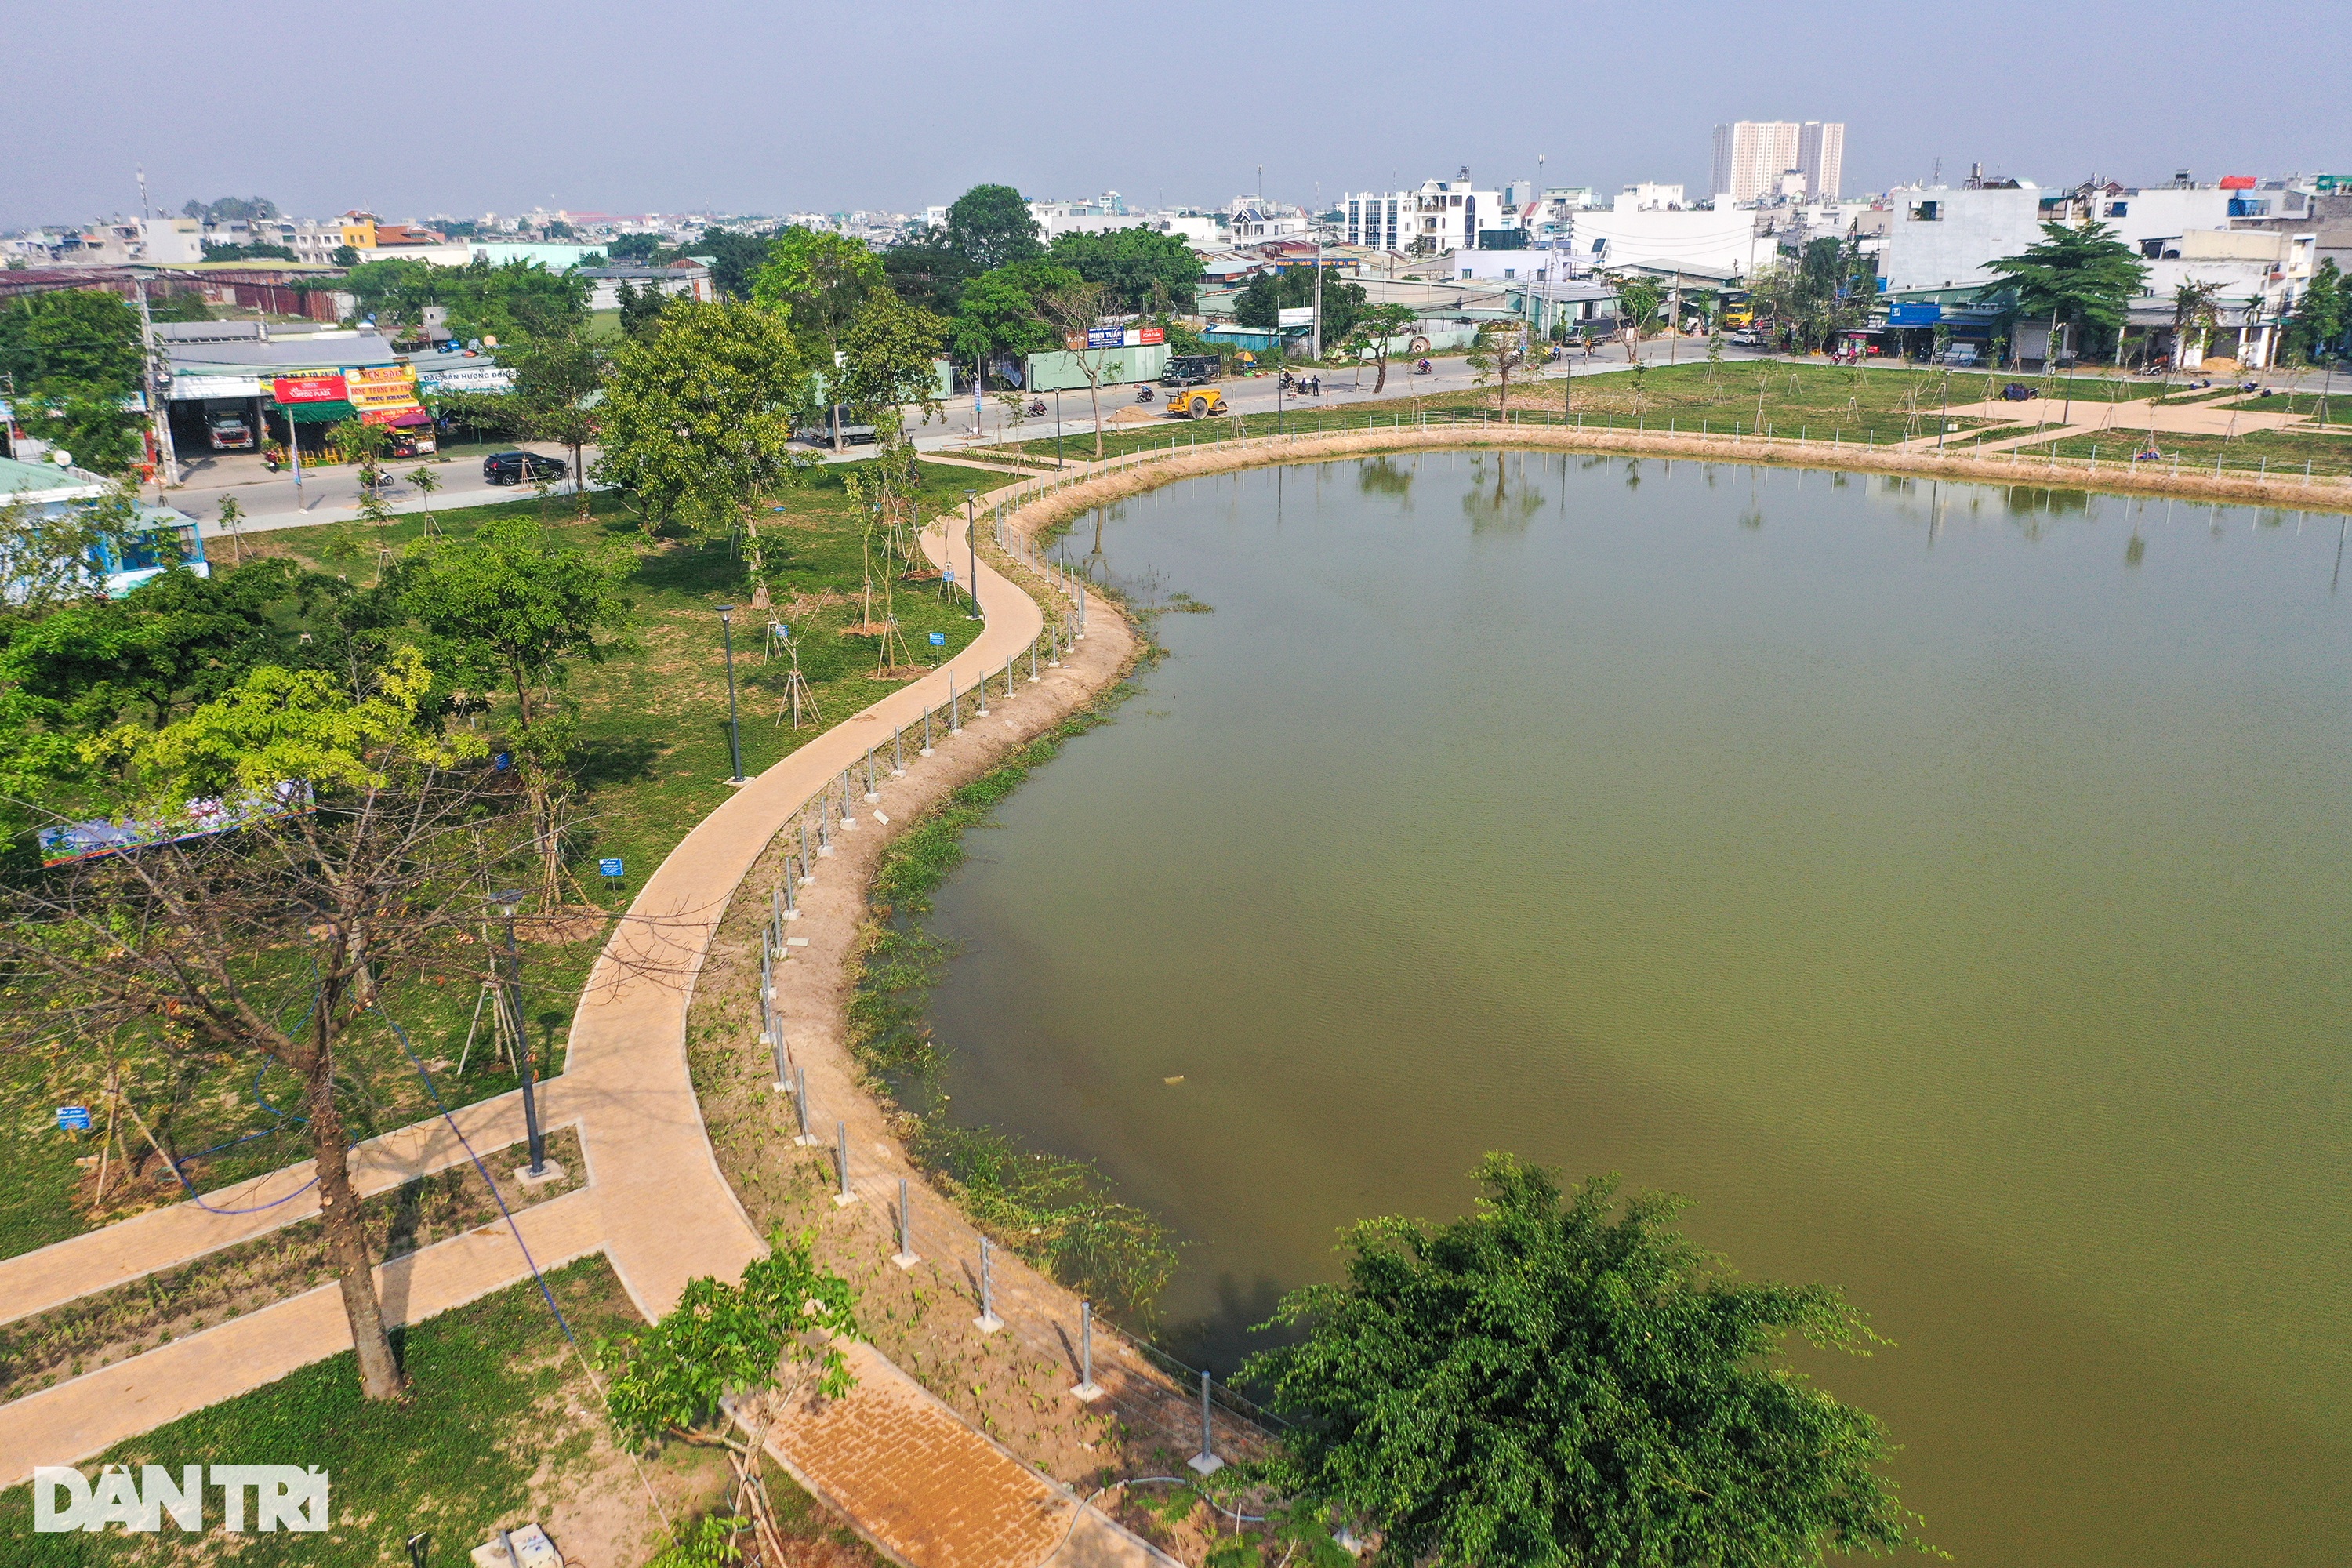 Bãi rác ô nhiễm trở thành công viên có hồ nước hình trái tim - 4